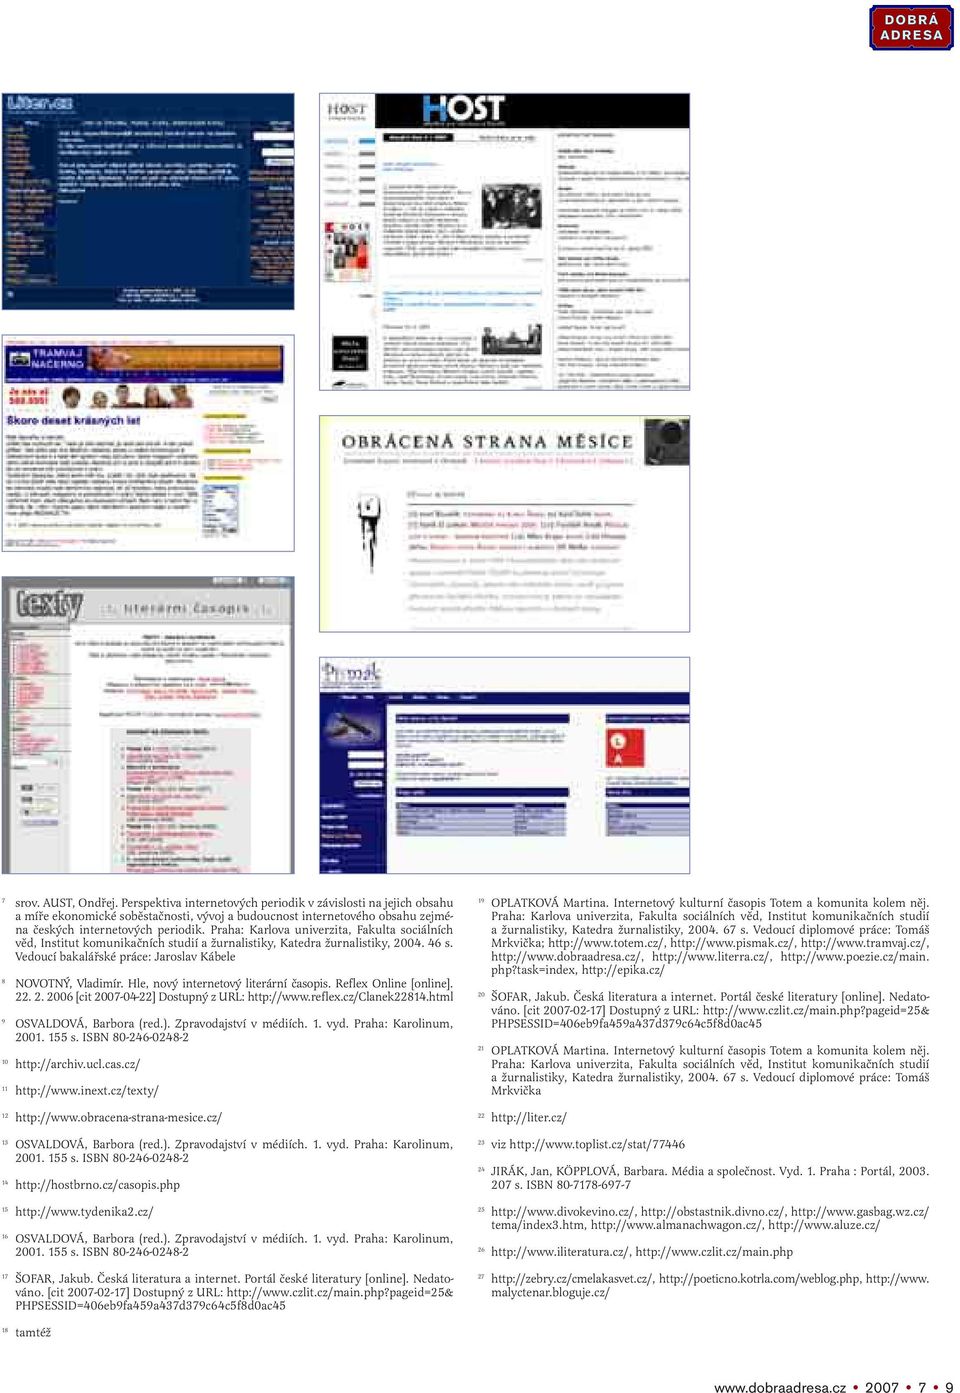 Hle, nový internetový literární časopis. Reflex Online [online]. 22. 2. 2006 [cit 2007-04-22] Dostupný z URL: http://www.reflex.cz/clanek22814.html 9 OSVALDOVÁ, Barbora (red.).